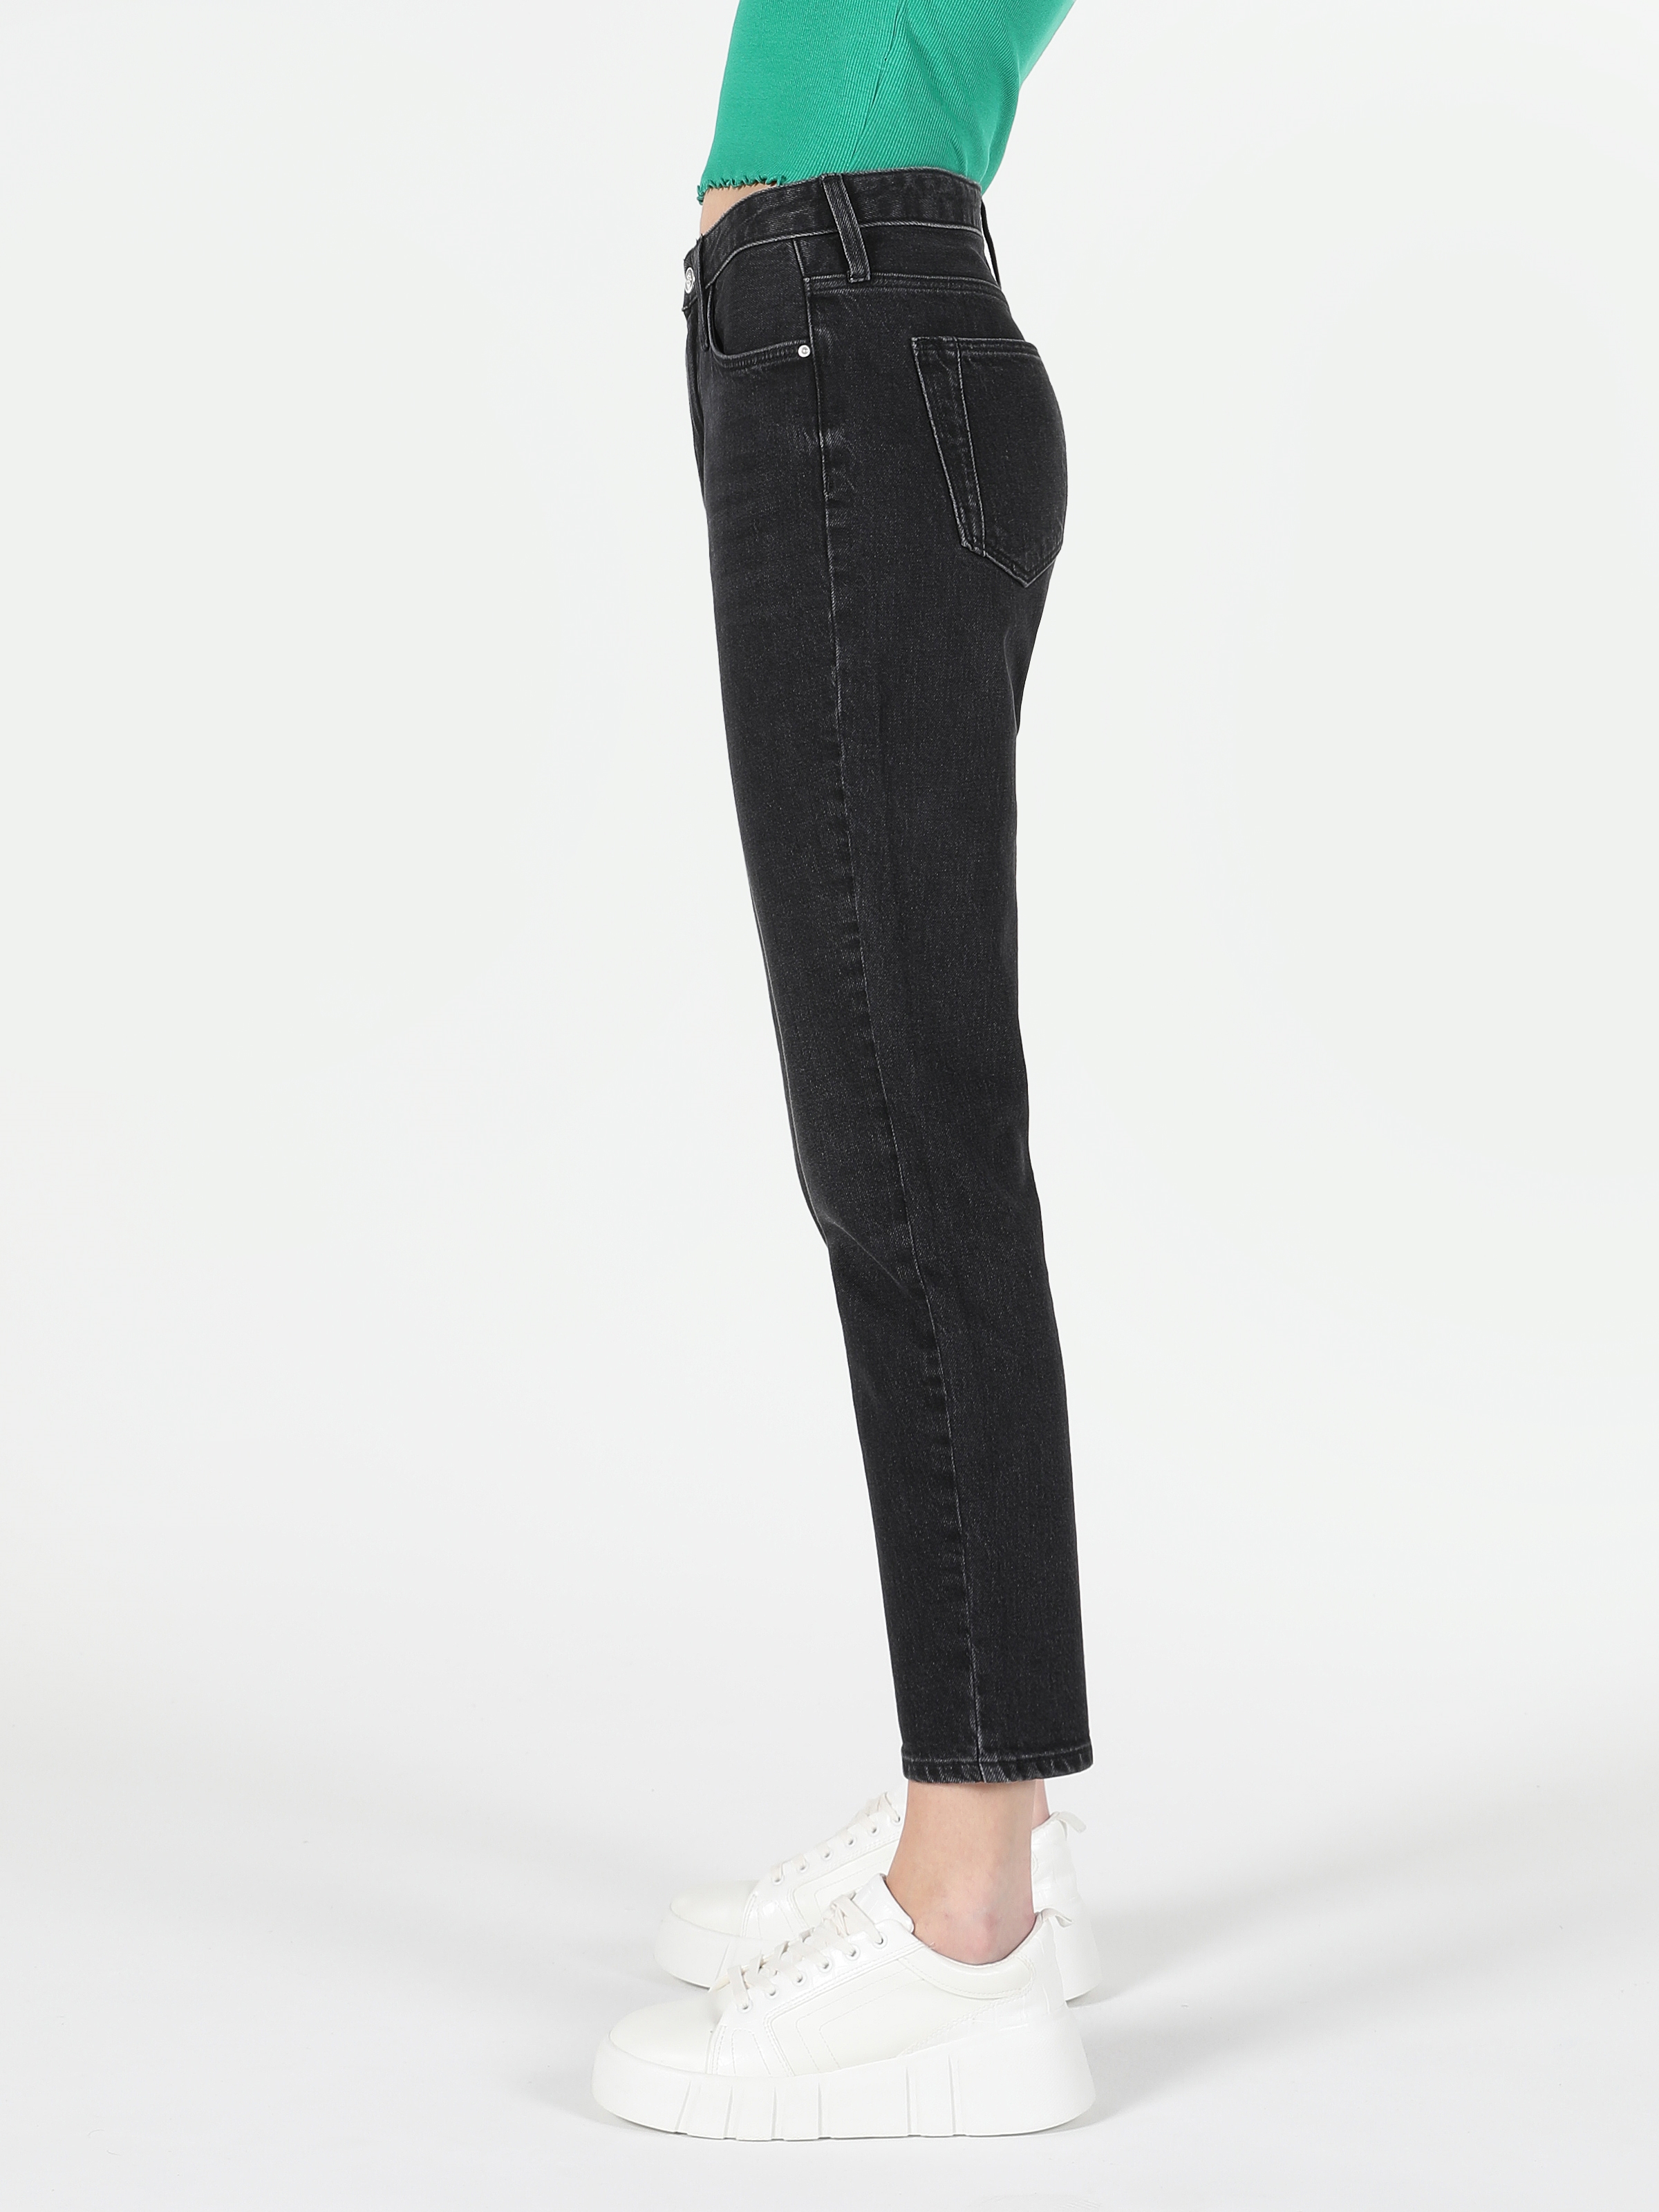 Afficher les détails de 891 Maya Slim Fit Taille Moyenne Jambe Effilée Noir Pantalon En Jean Pour Femme